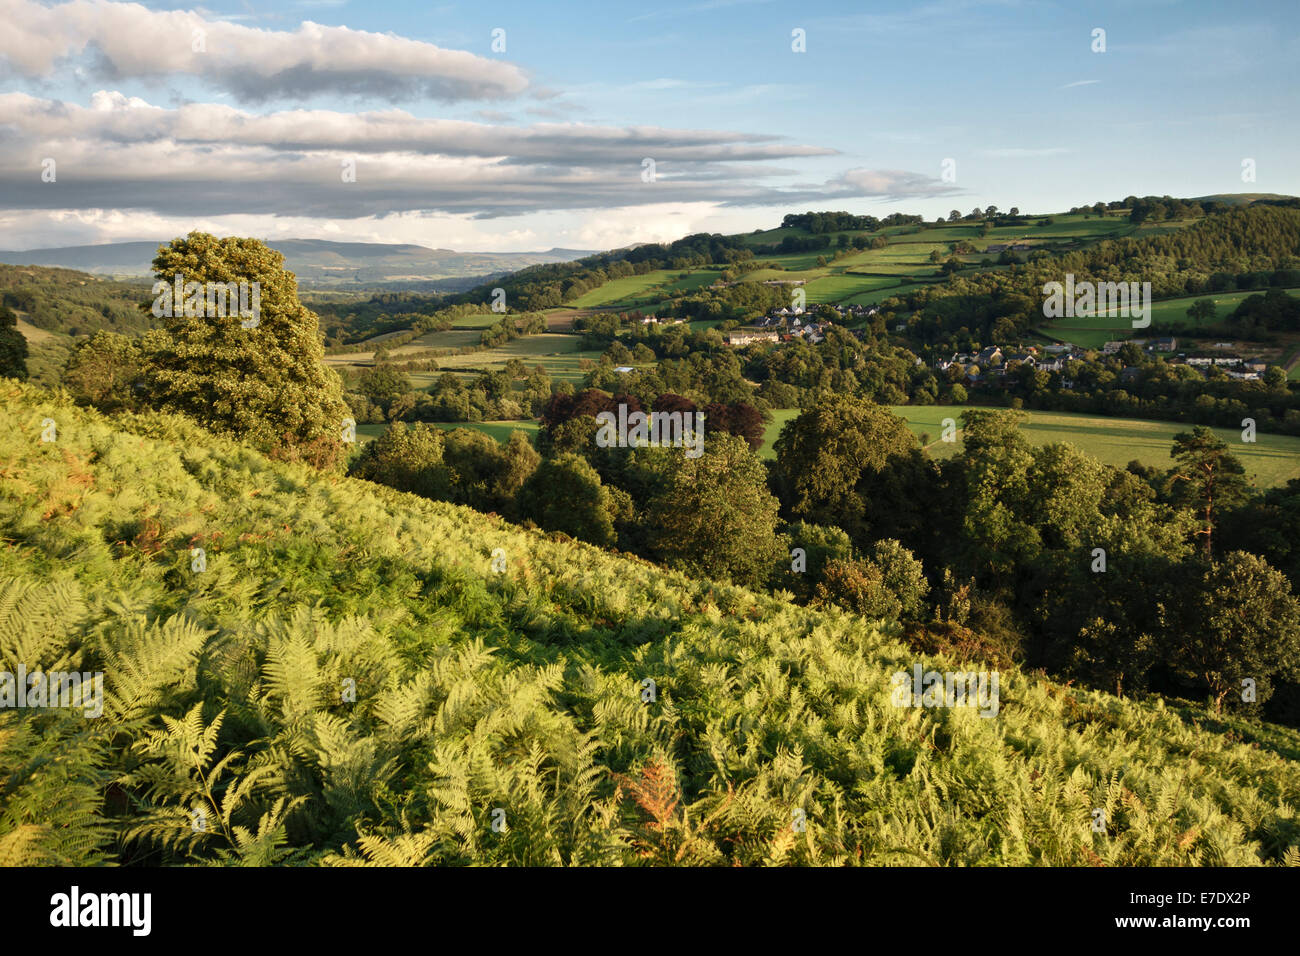 Le village de Erwood dans les collines du Pays de Galles, au-dessus de la rivière Wye près de Builth Wells Banque D'Images